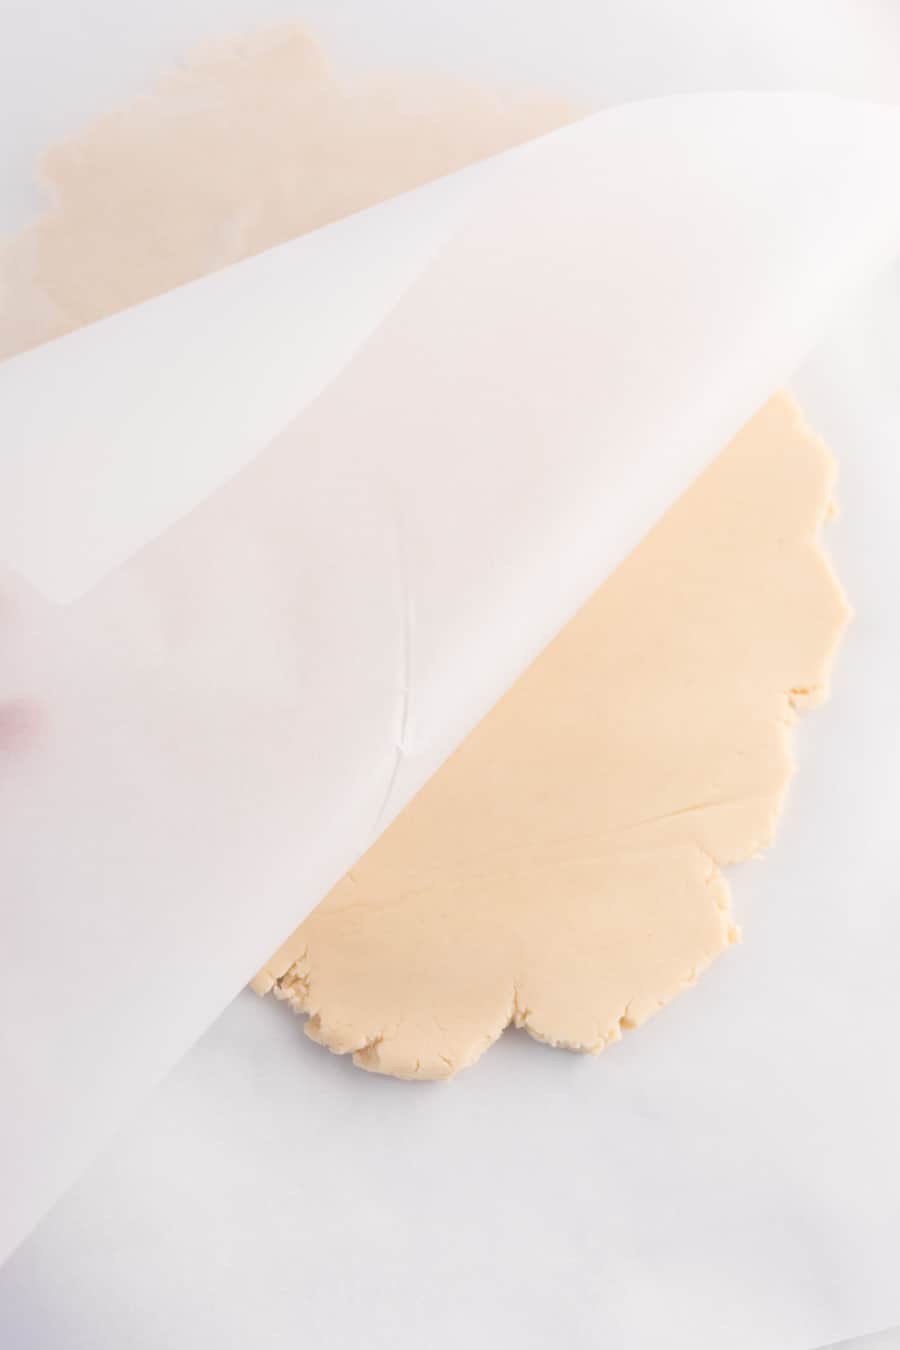 shortbread cookie dough between parchment.